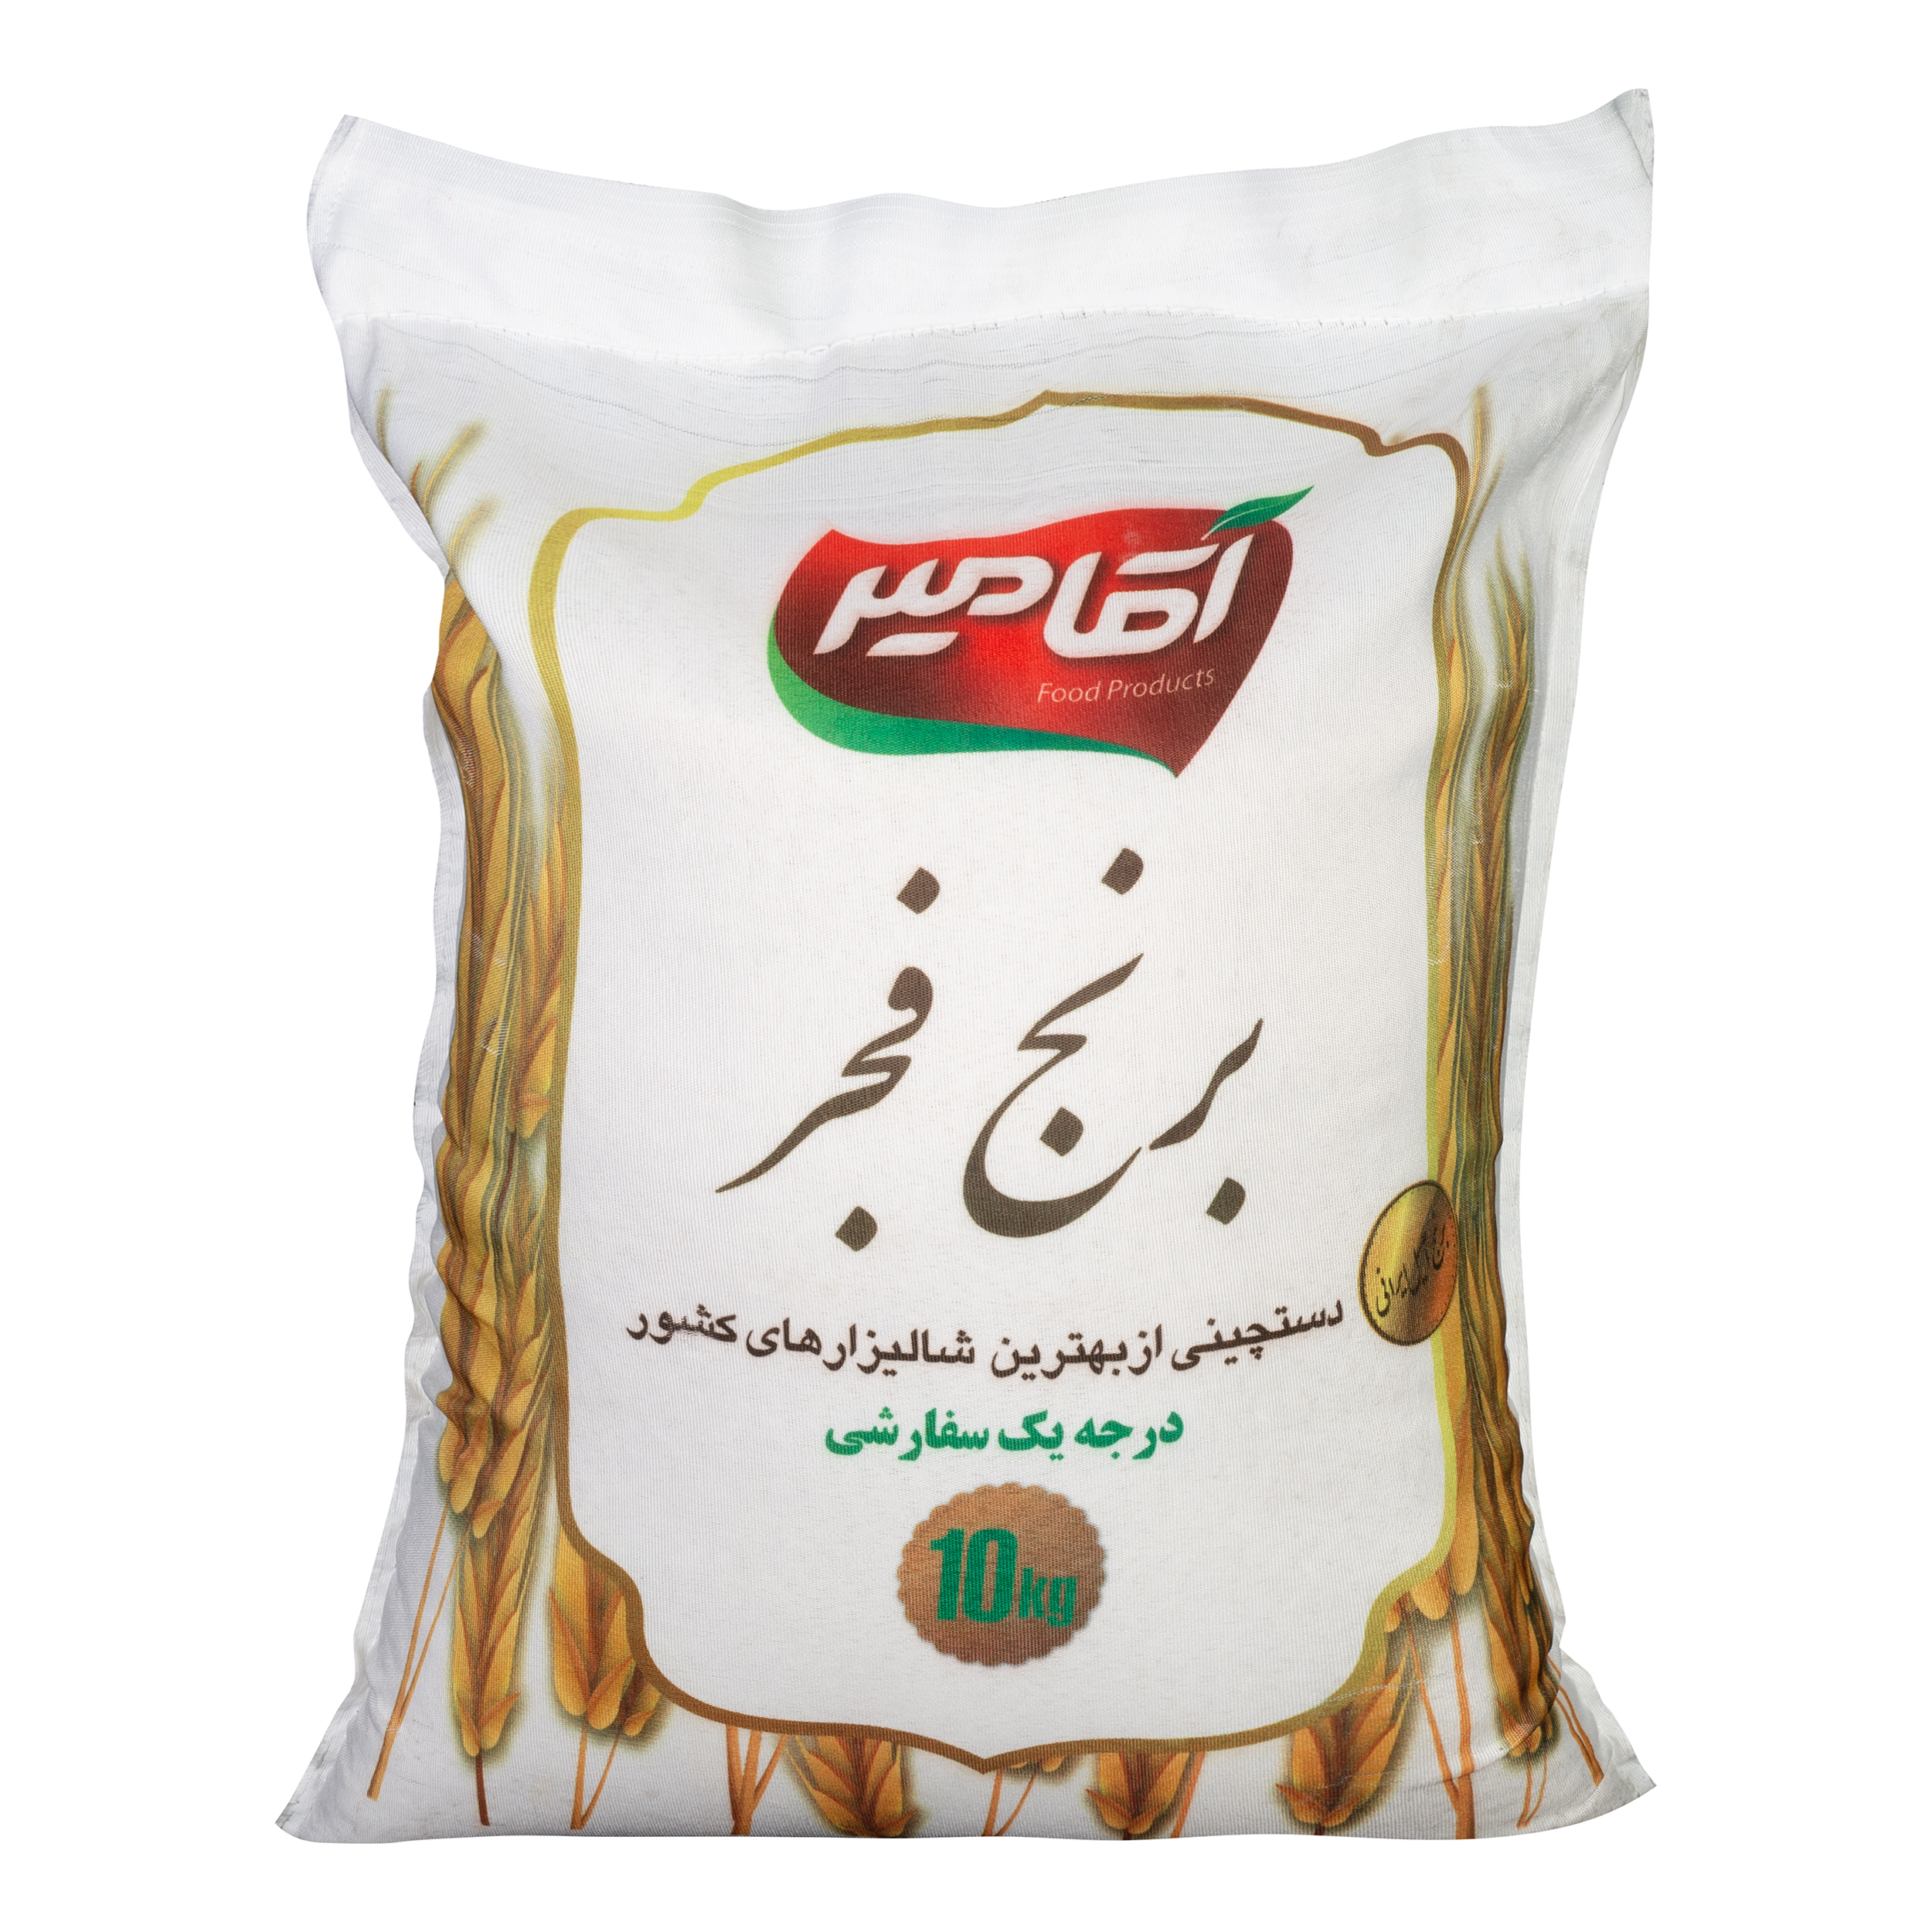 نکته خرید - قیمت روز برنج فجر آقامیر - 10 کیلوگرم خرید